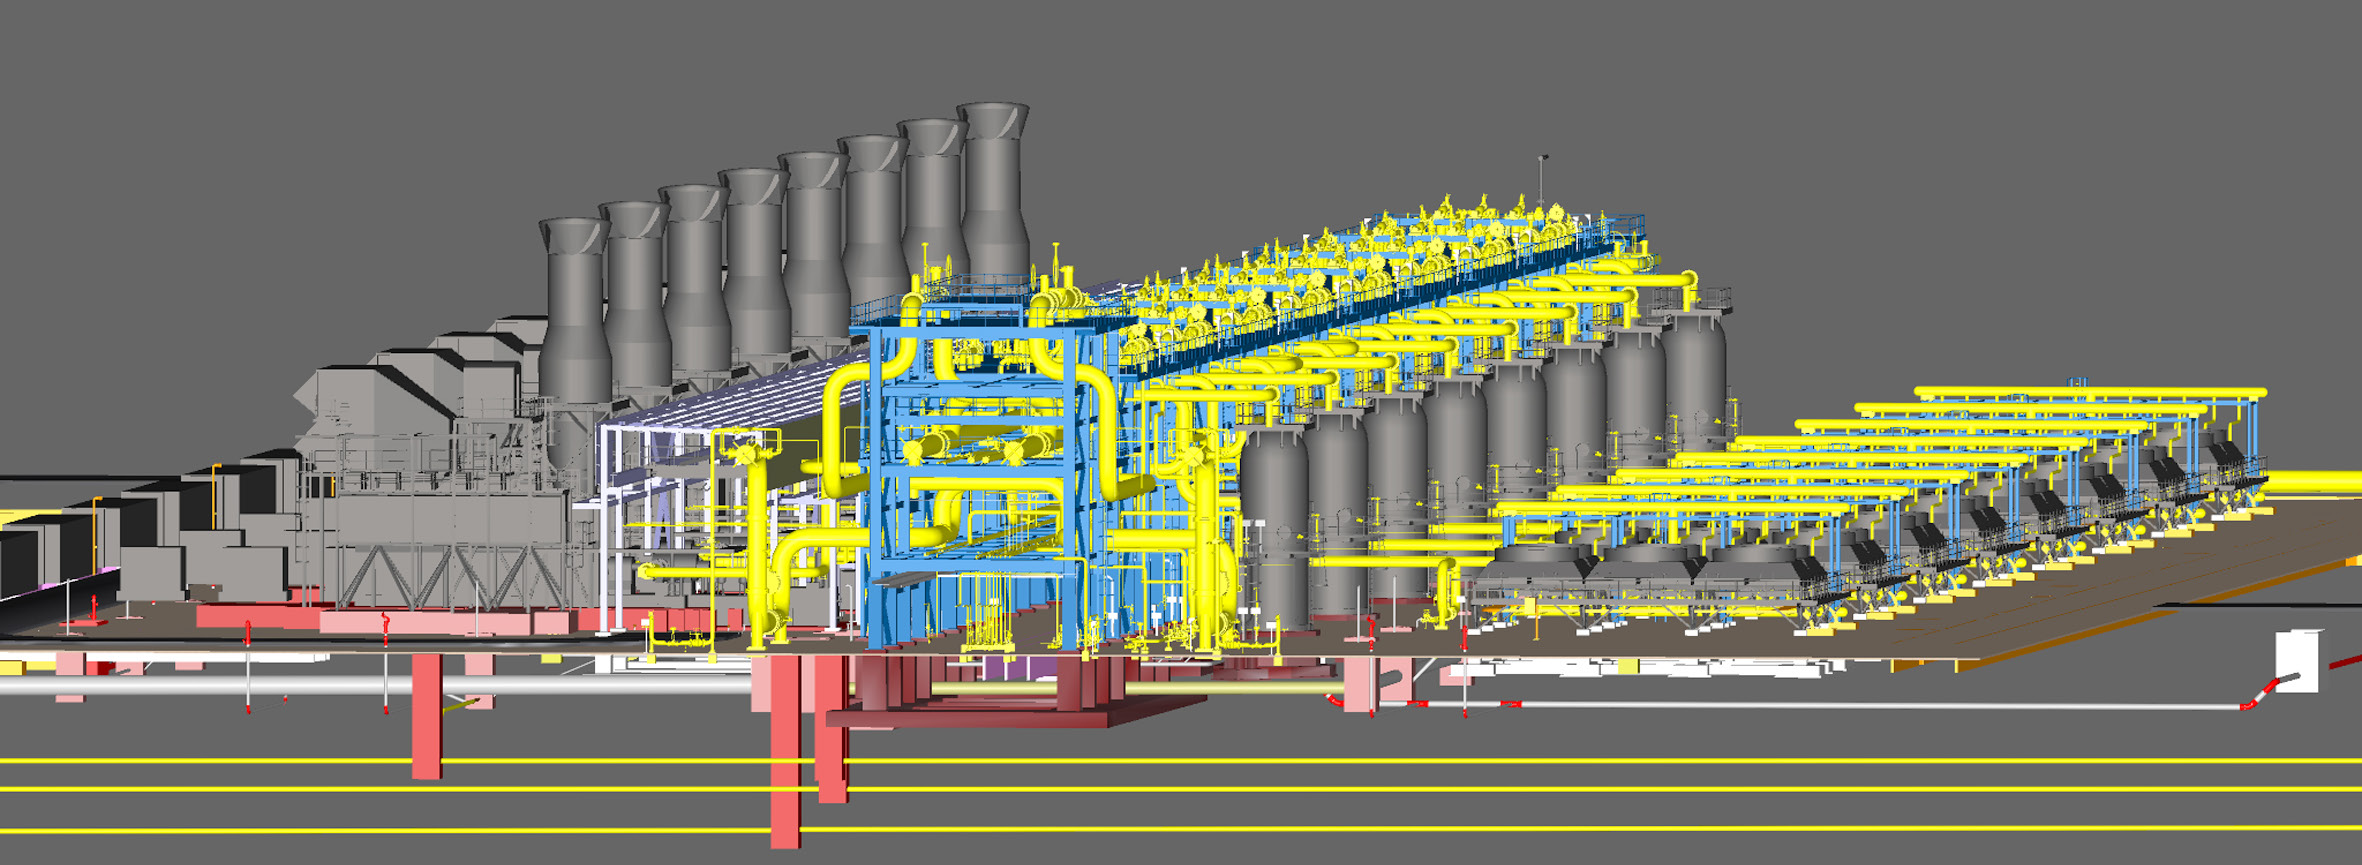 خدمات مشاوره مهندسی و خدمات دفتر فنی كارگاه واحد 106 پروژه فاز 19 پارس جنوبی (Gas export compression and metering unit)